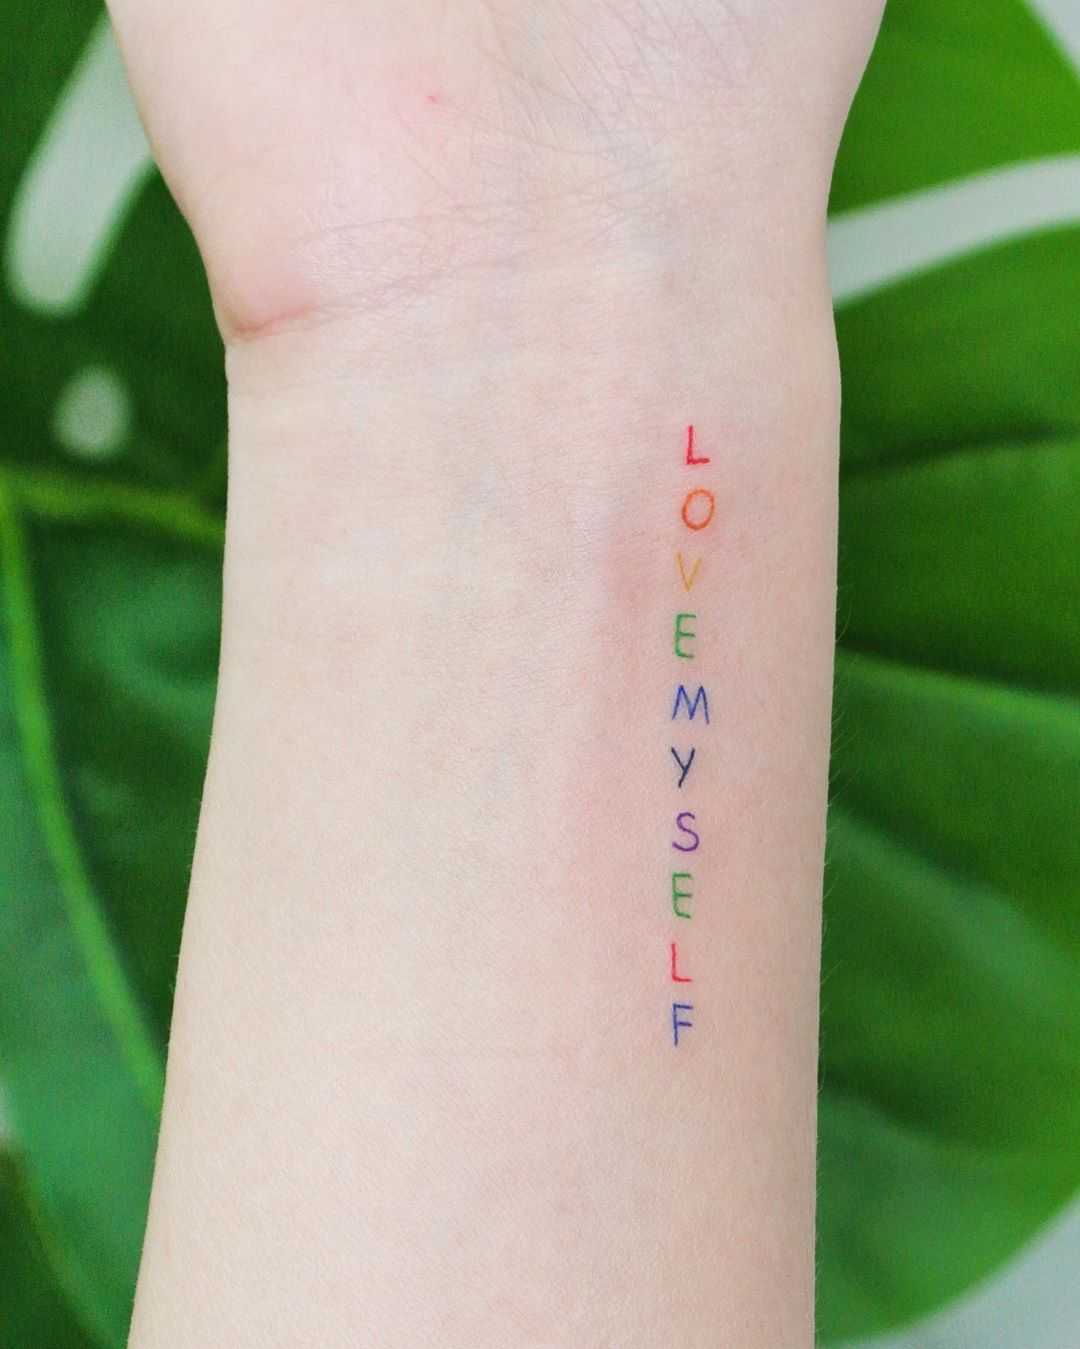 Lovemyself by tattooist Cozy